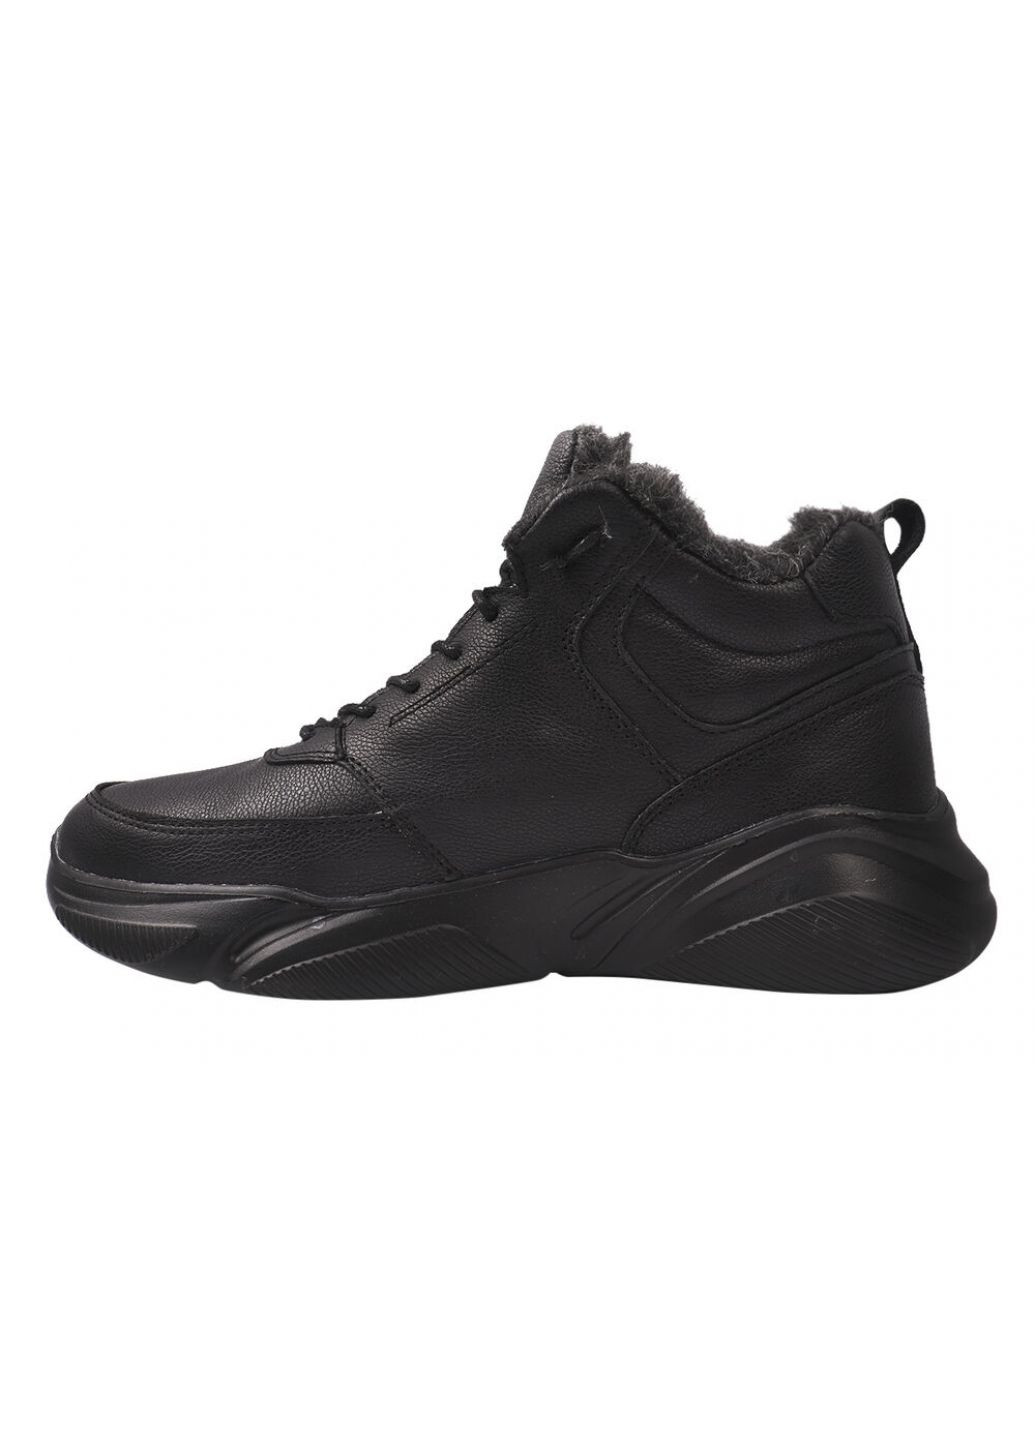 Черные ботинки мужские из натуральной кожи,высокие,черные,украина Visazh 163-21ZHS